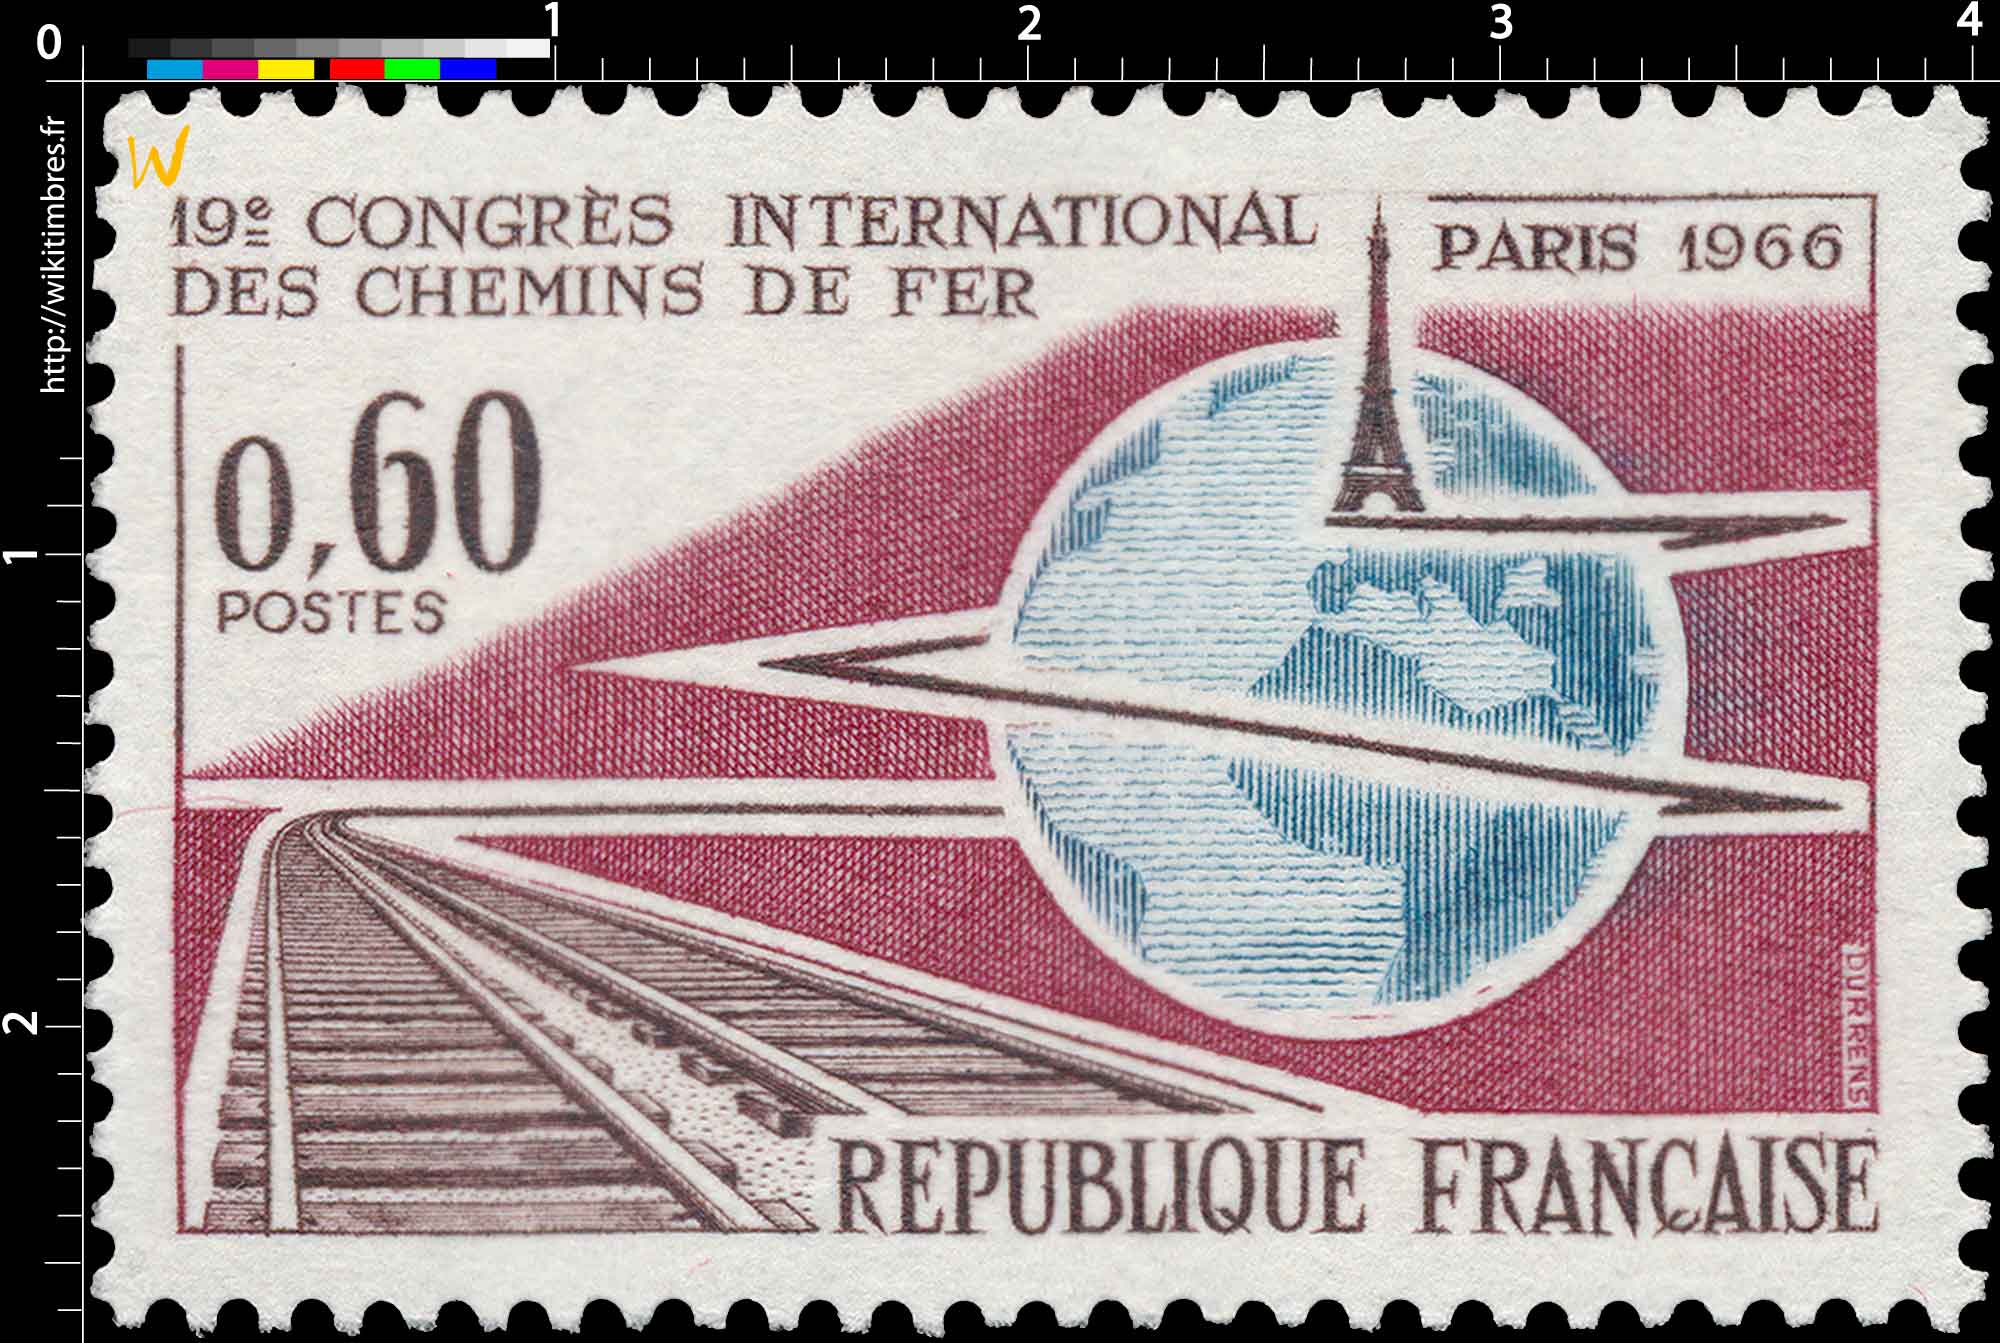 19e CONGRÈS INTERNATIONAL DES CHEMINS DE FER PARIS 1966